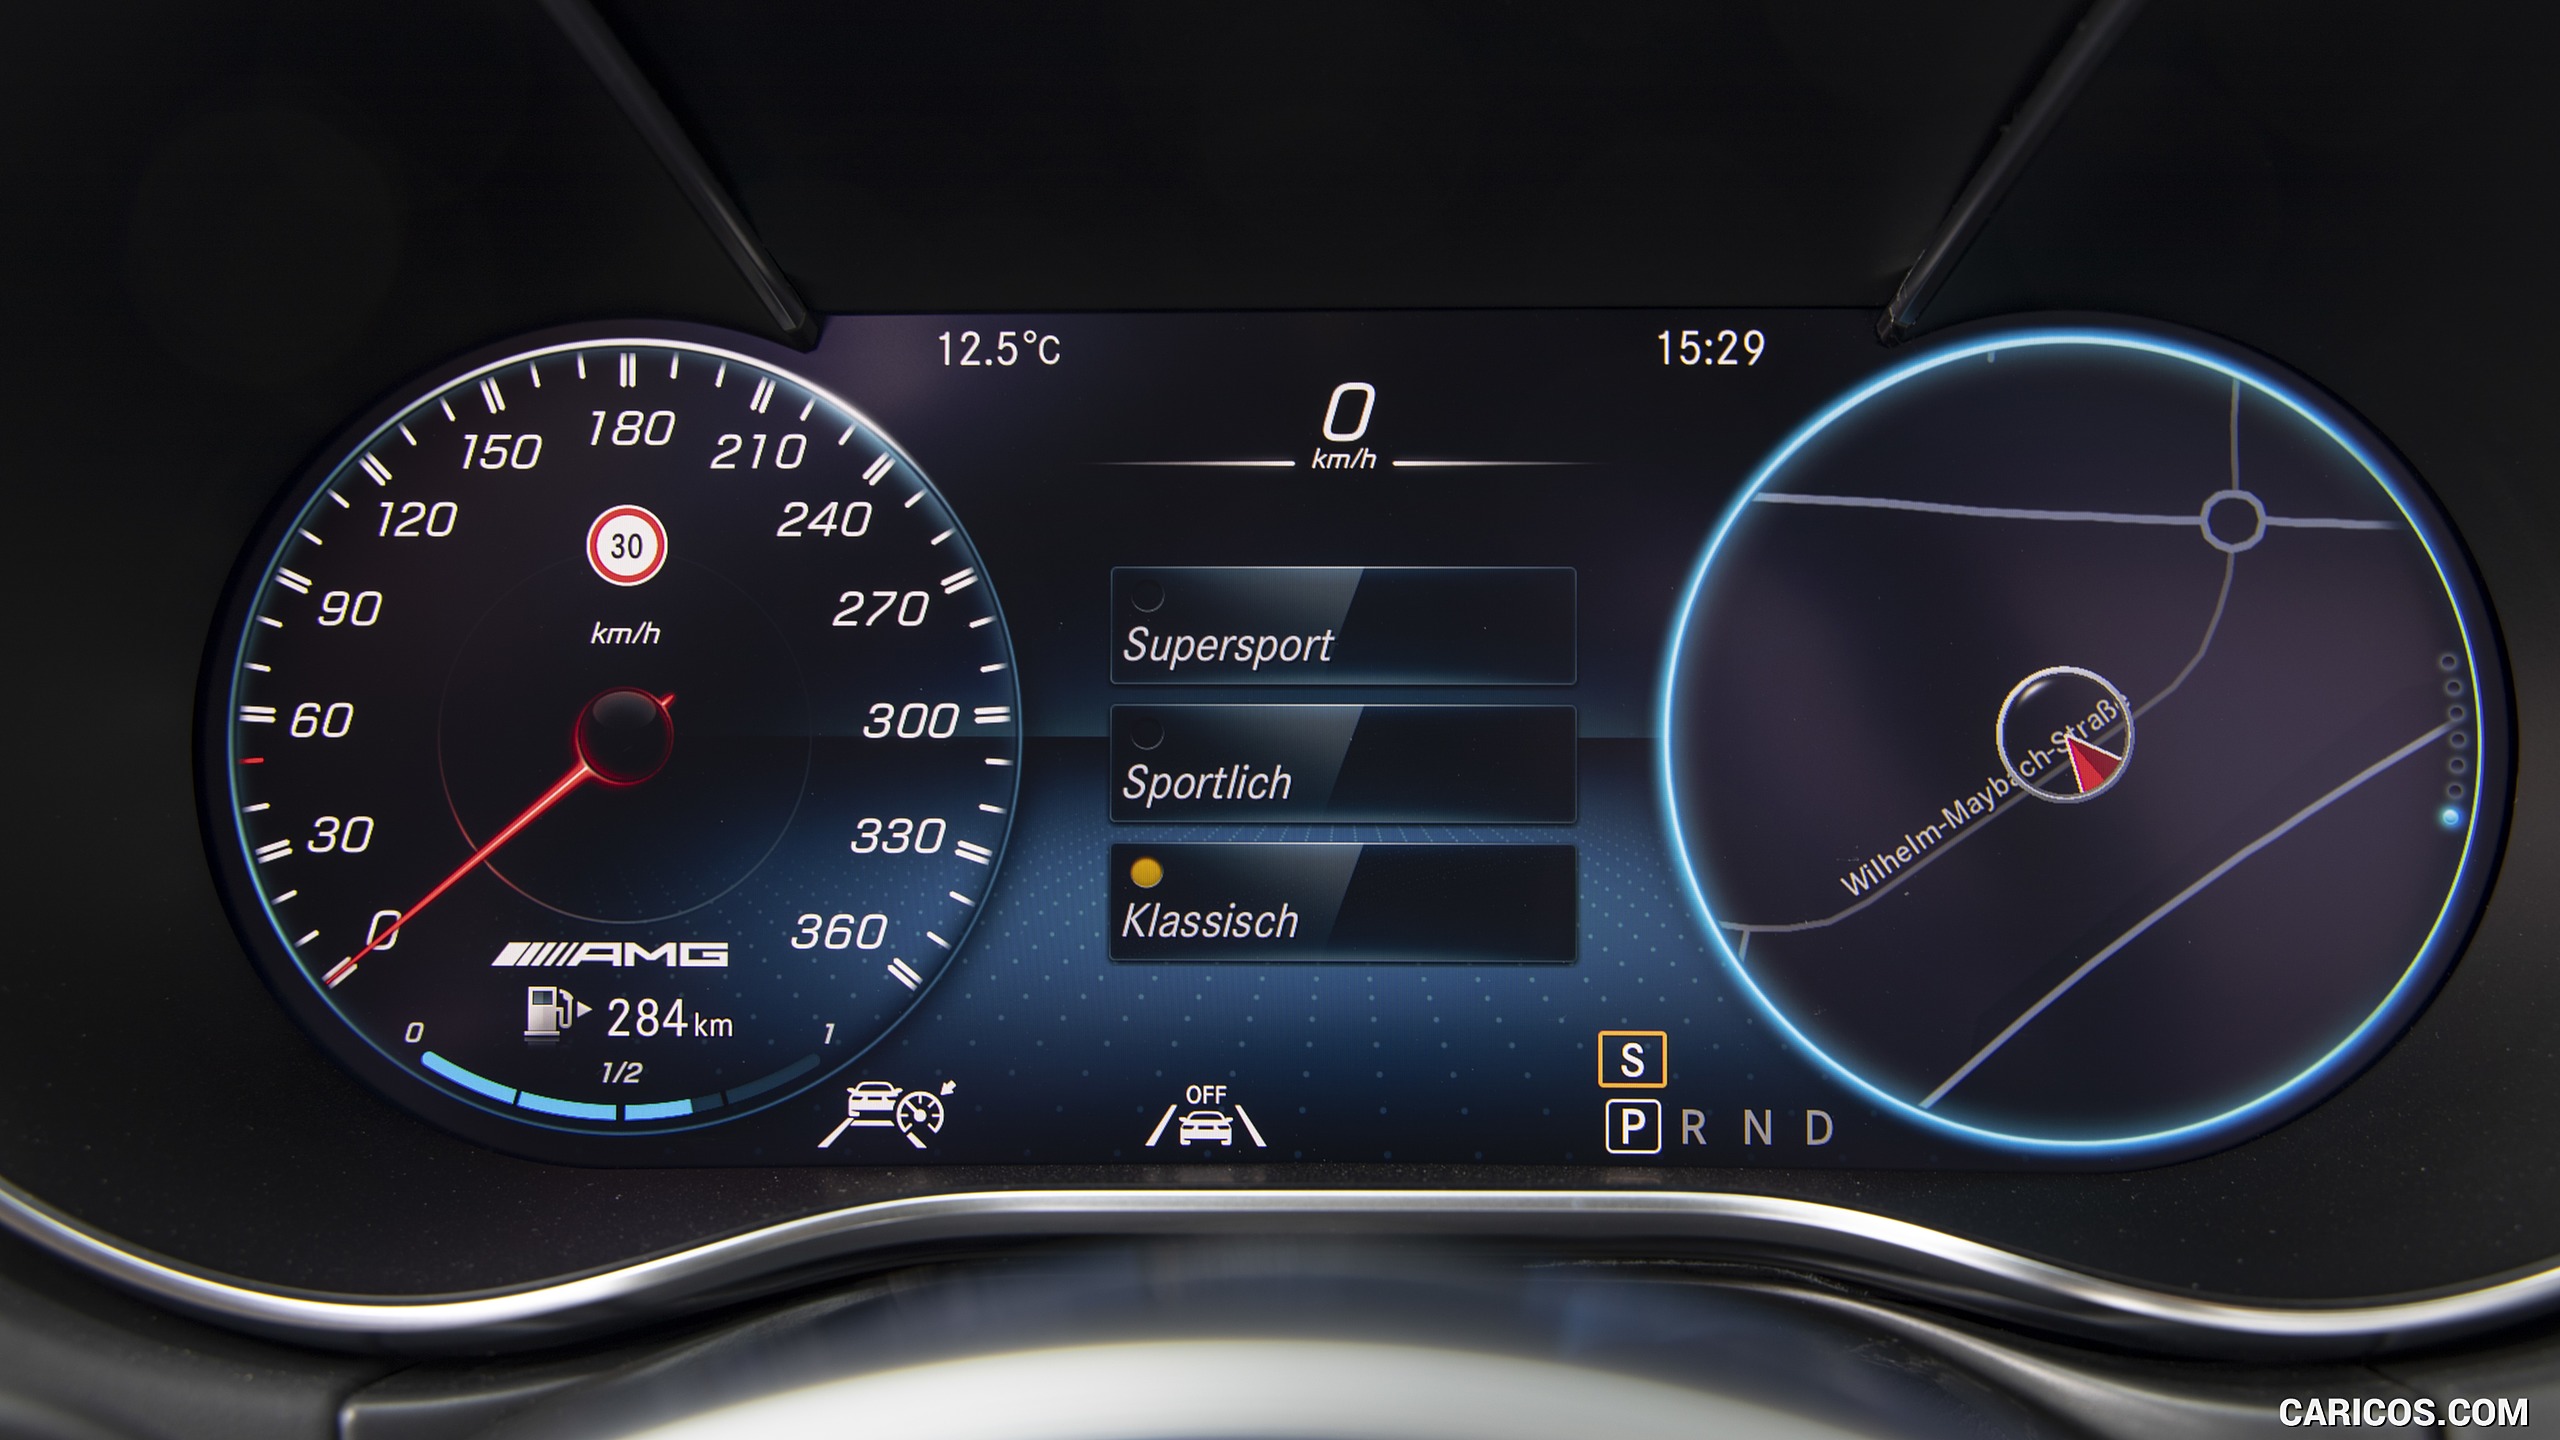 2020 Mercedes-AMG GT S Roadster - Digital Instrument Cluster, #111 of 328